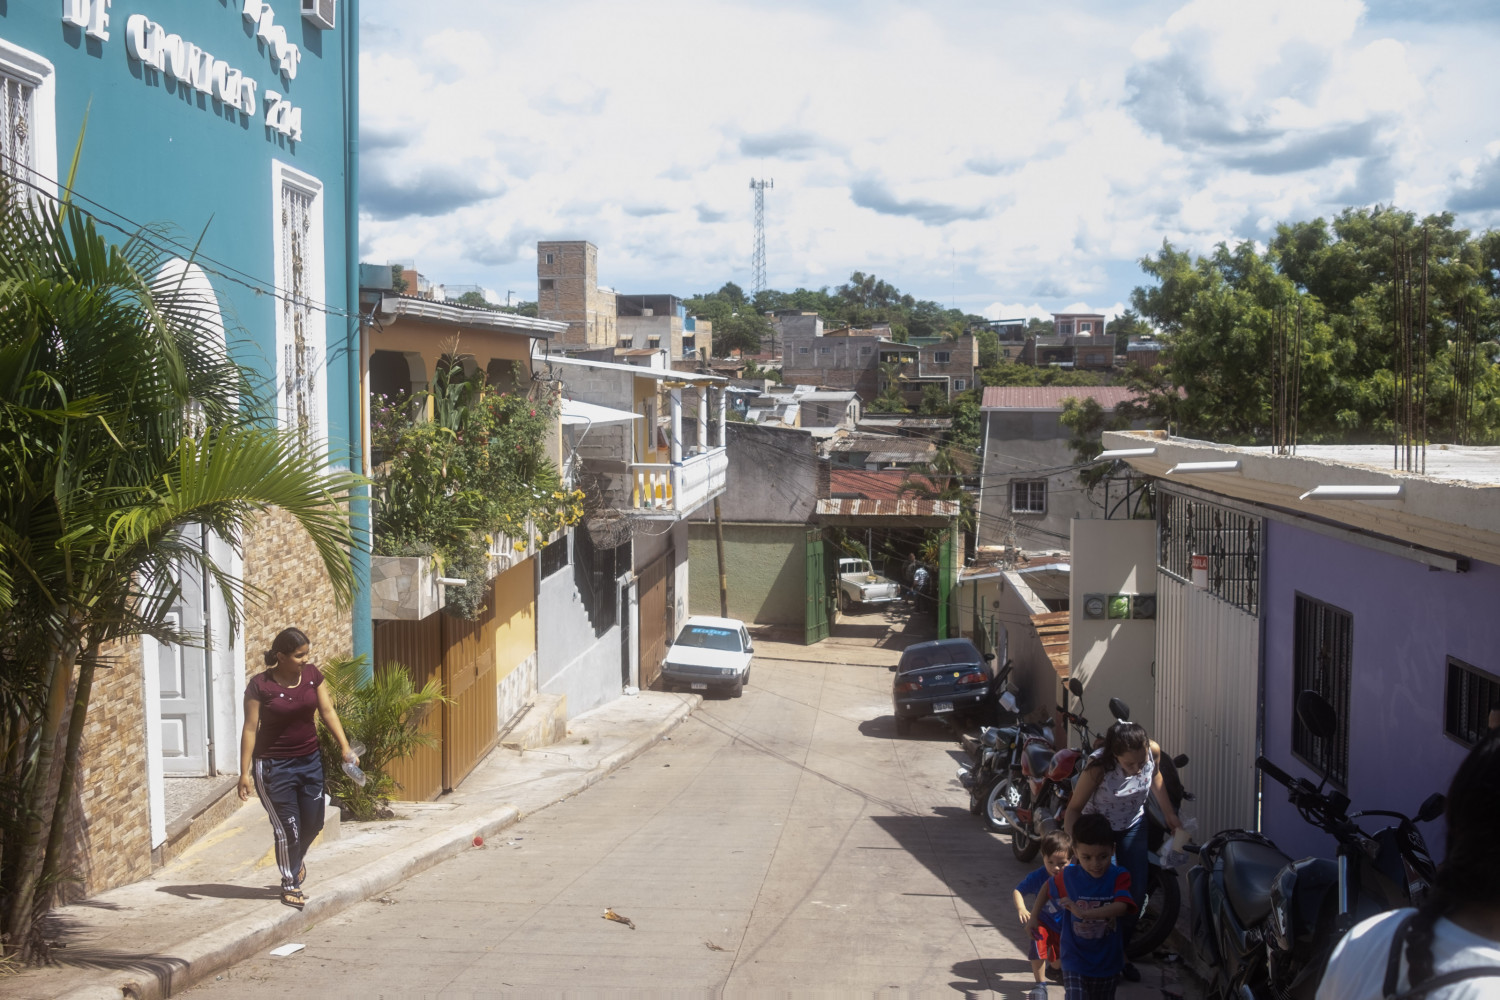 A street in Honduras.